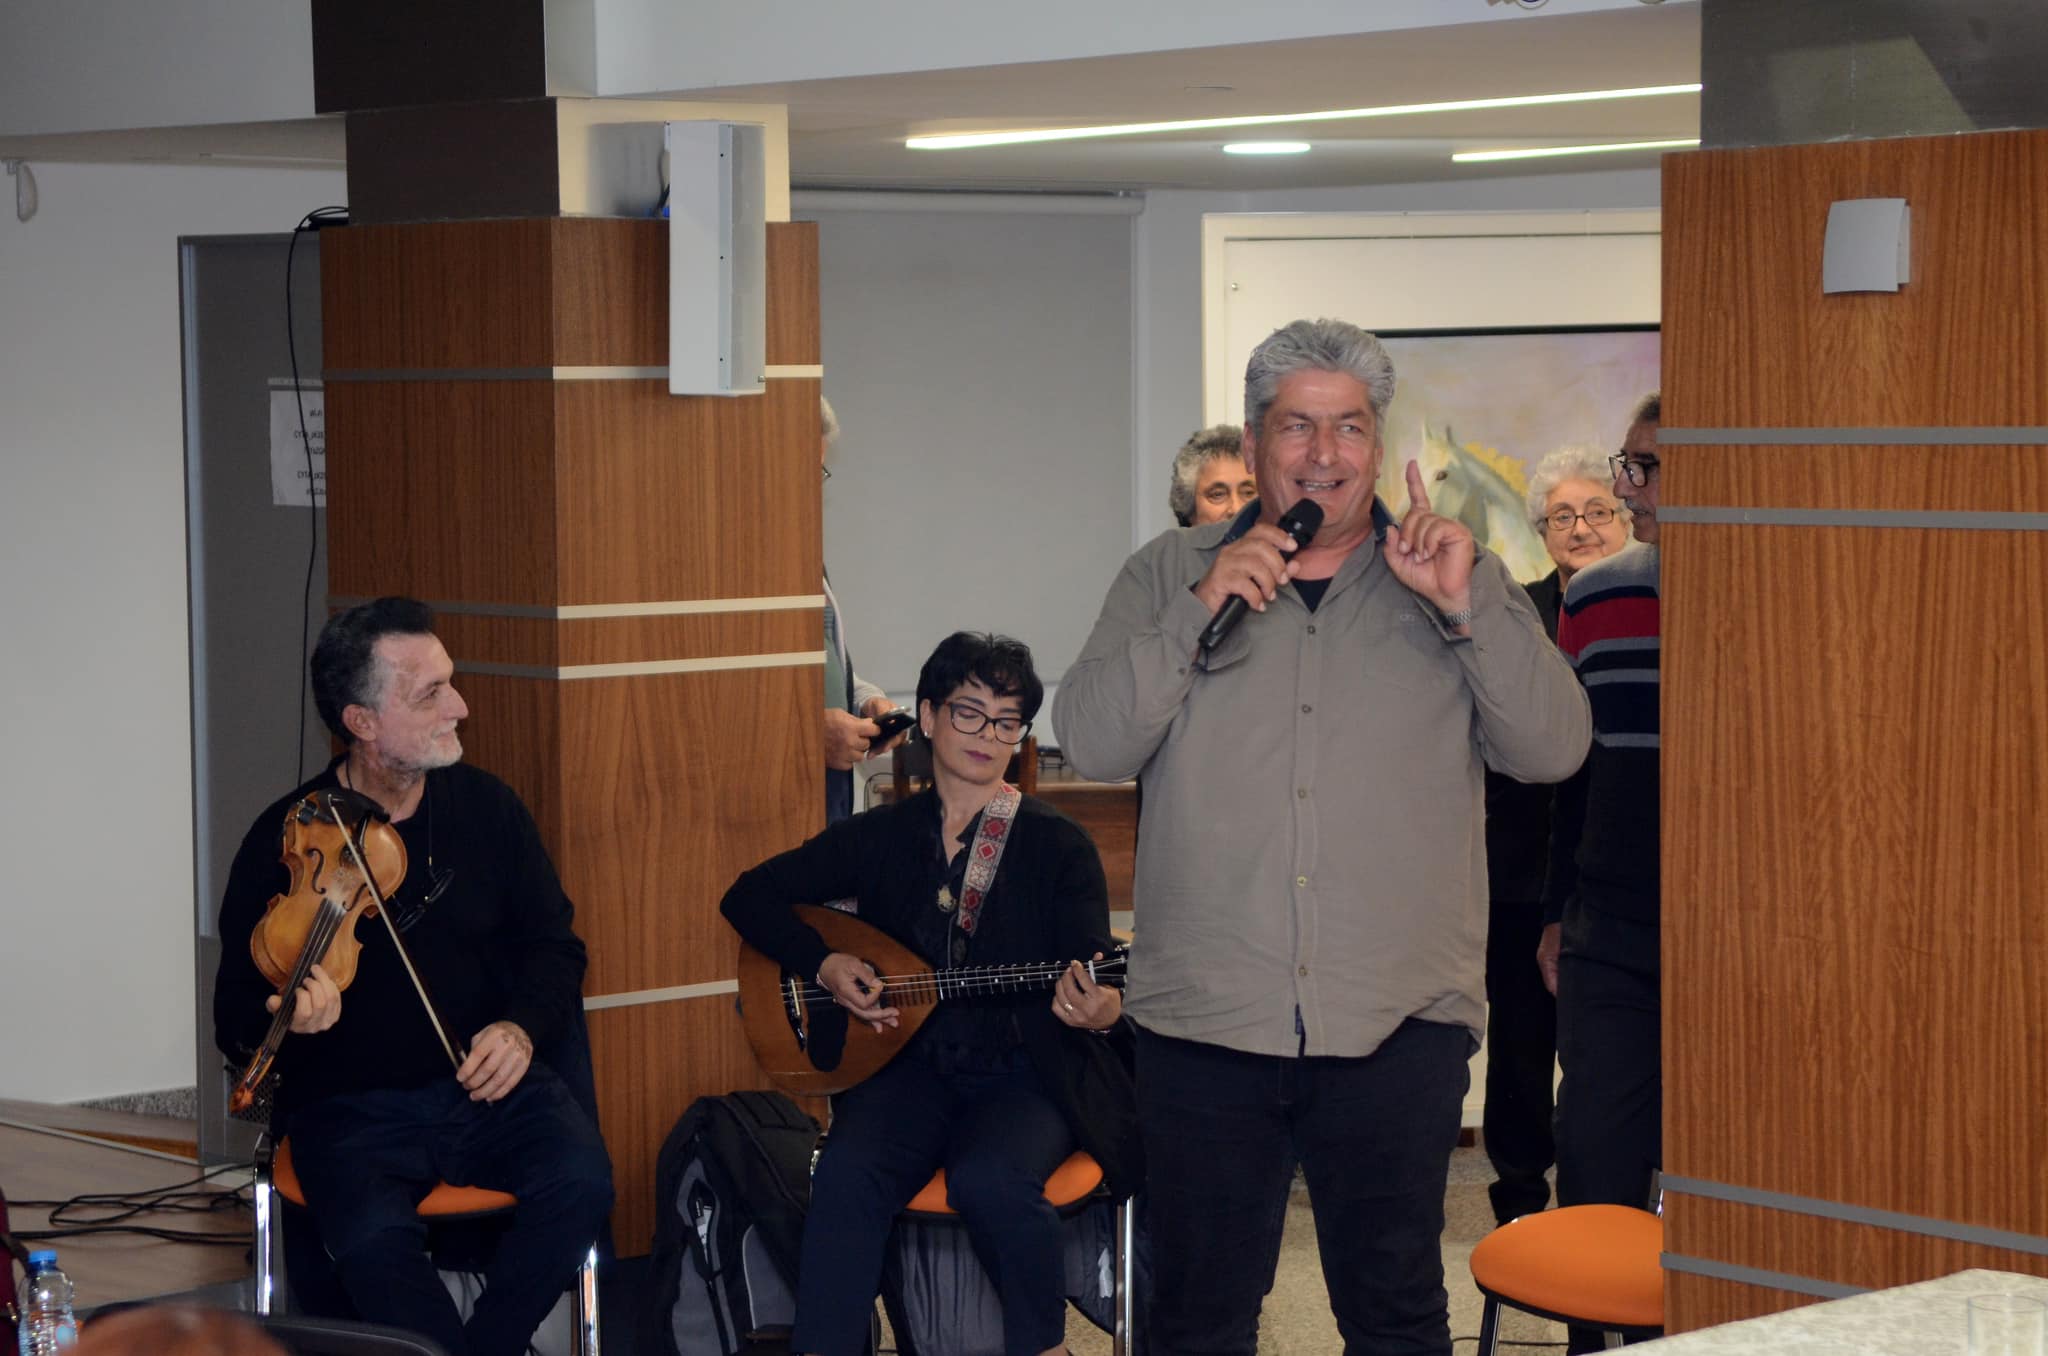 Η Παγκόσμια Ημέρα Ποίησης γιορτάστηκε στη Λάρνακα με τιμώμενο τον μεγάλο λαϊκό ποιητή Ανδρονικό Κατσιαντώνη (φώτο)